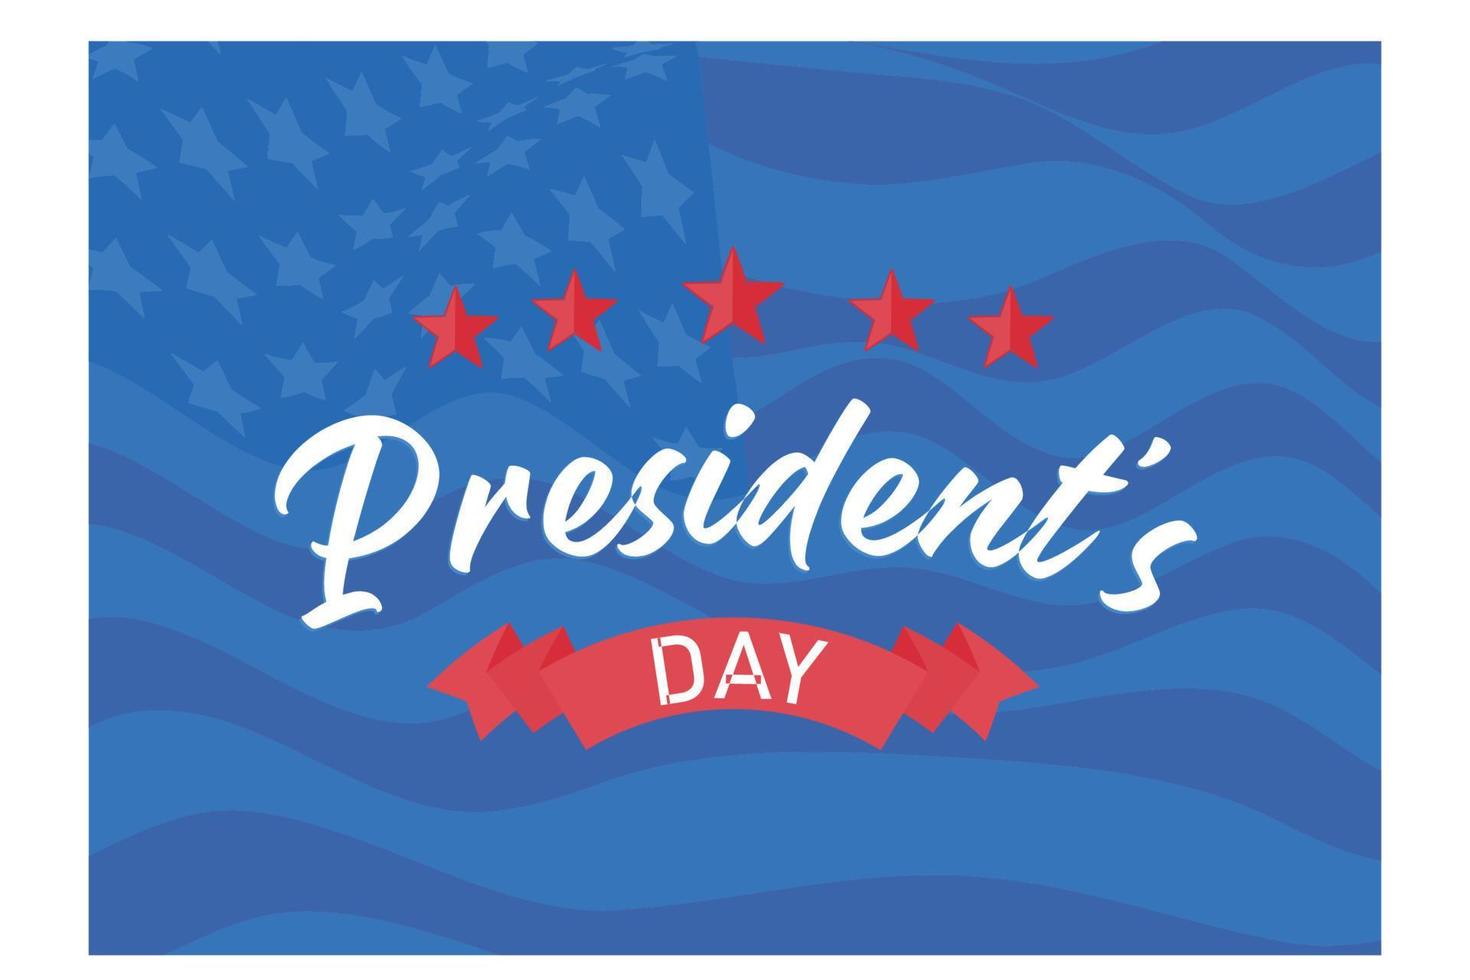 letras de texto del día de los presidentes felices para el día de los presidentes en estados unidos, ilustración moderna de vector plano